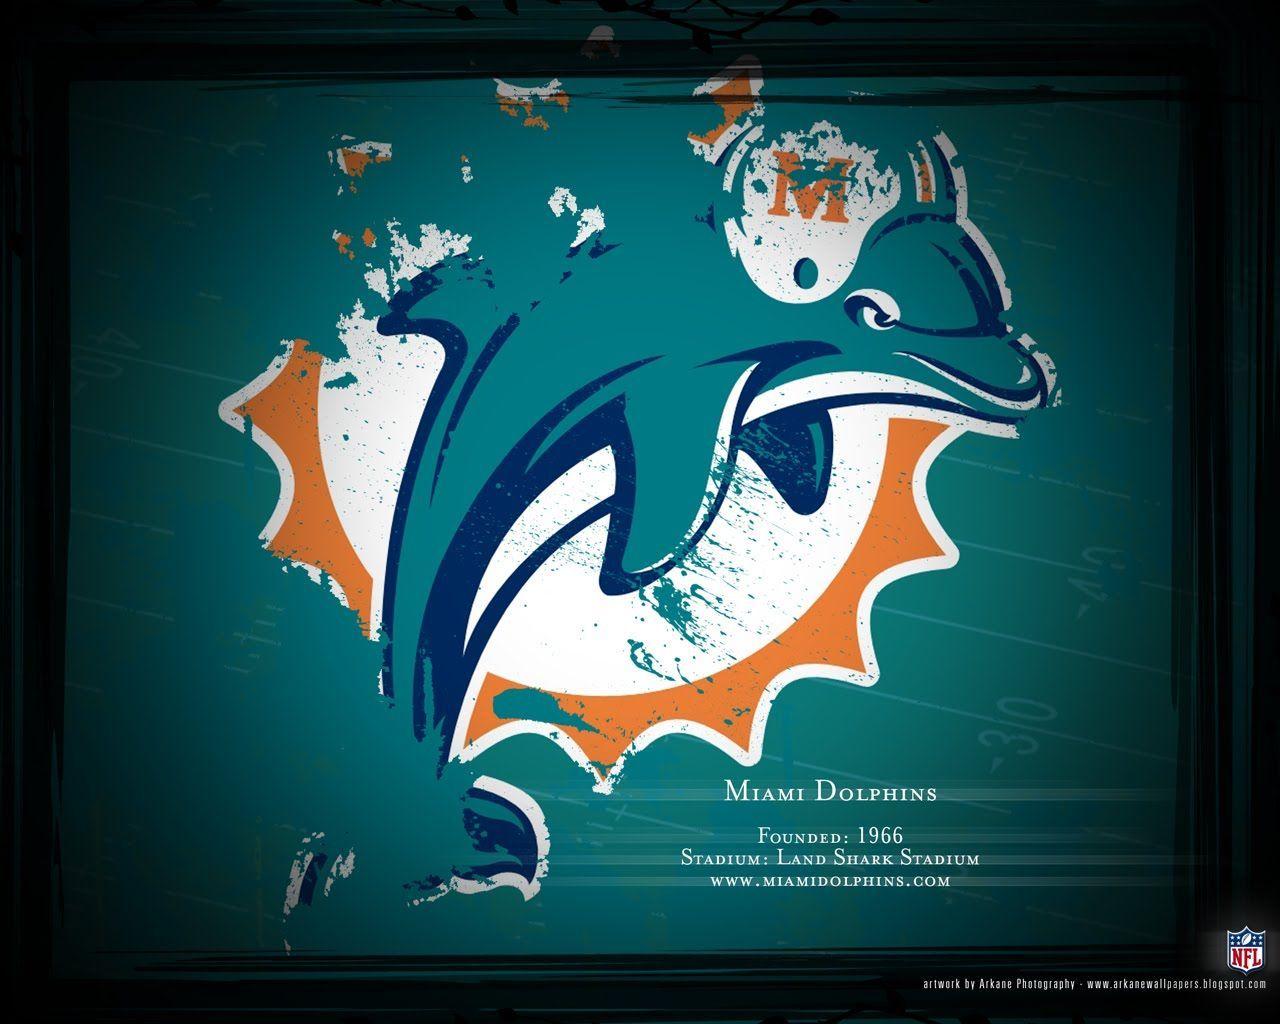 Free Miami Dolphins wallpaper desktop image. Miami Dolphins